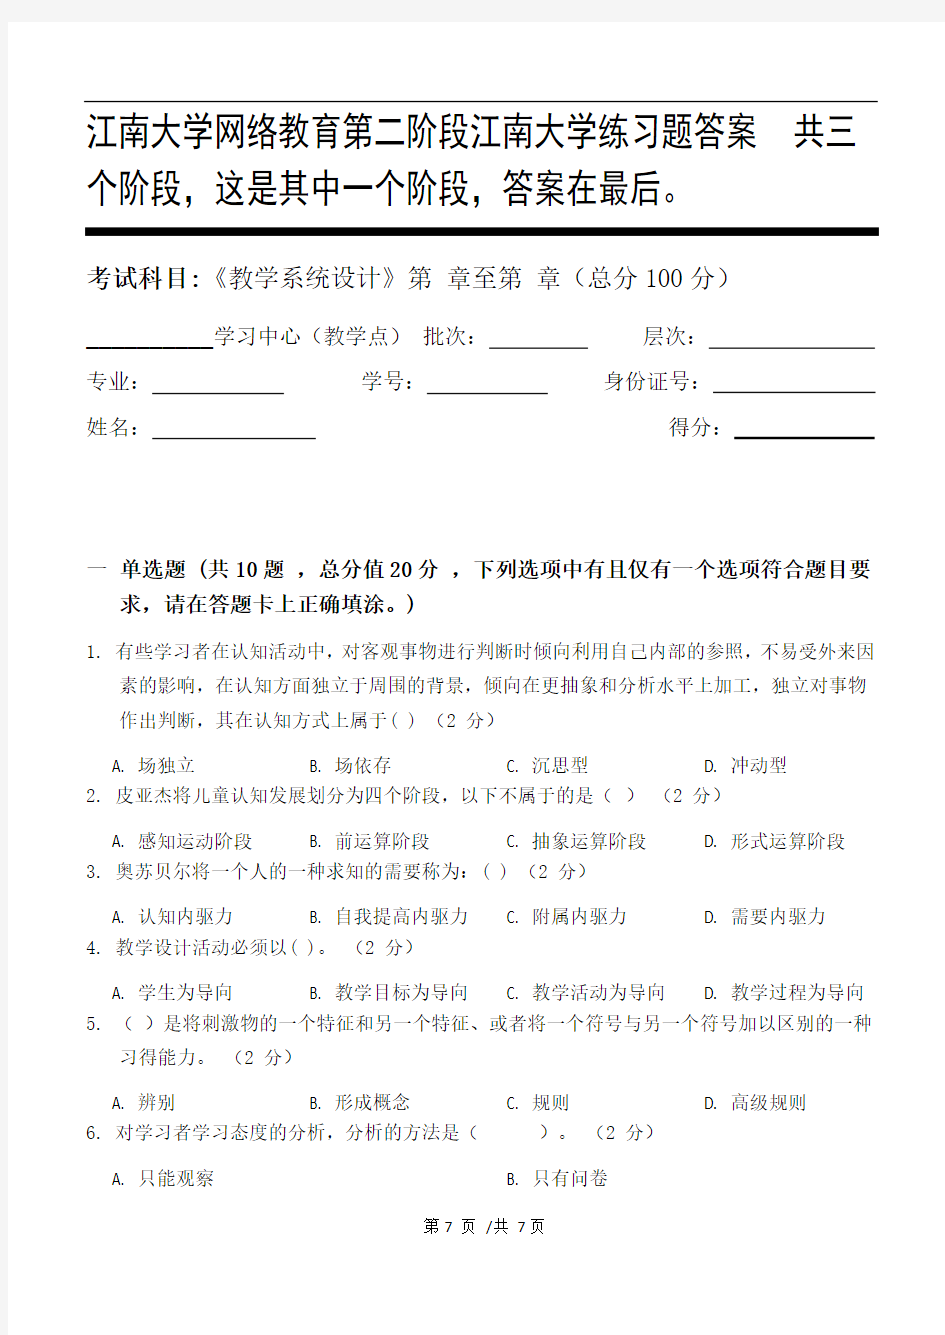 教学系统设计第2阶段江南大学练习题答案  共三个阶段,这是其中一个阶段,答案在最后。